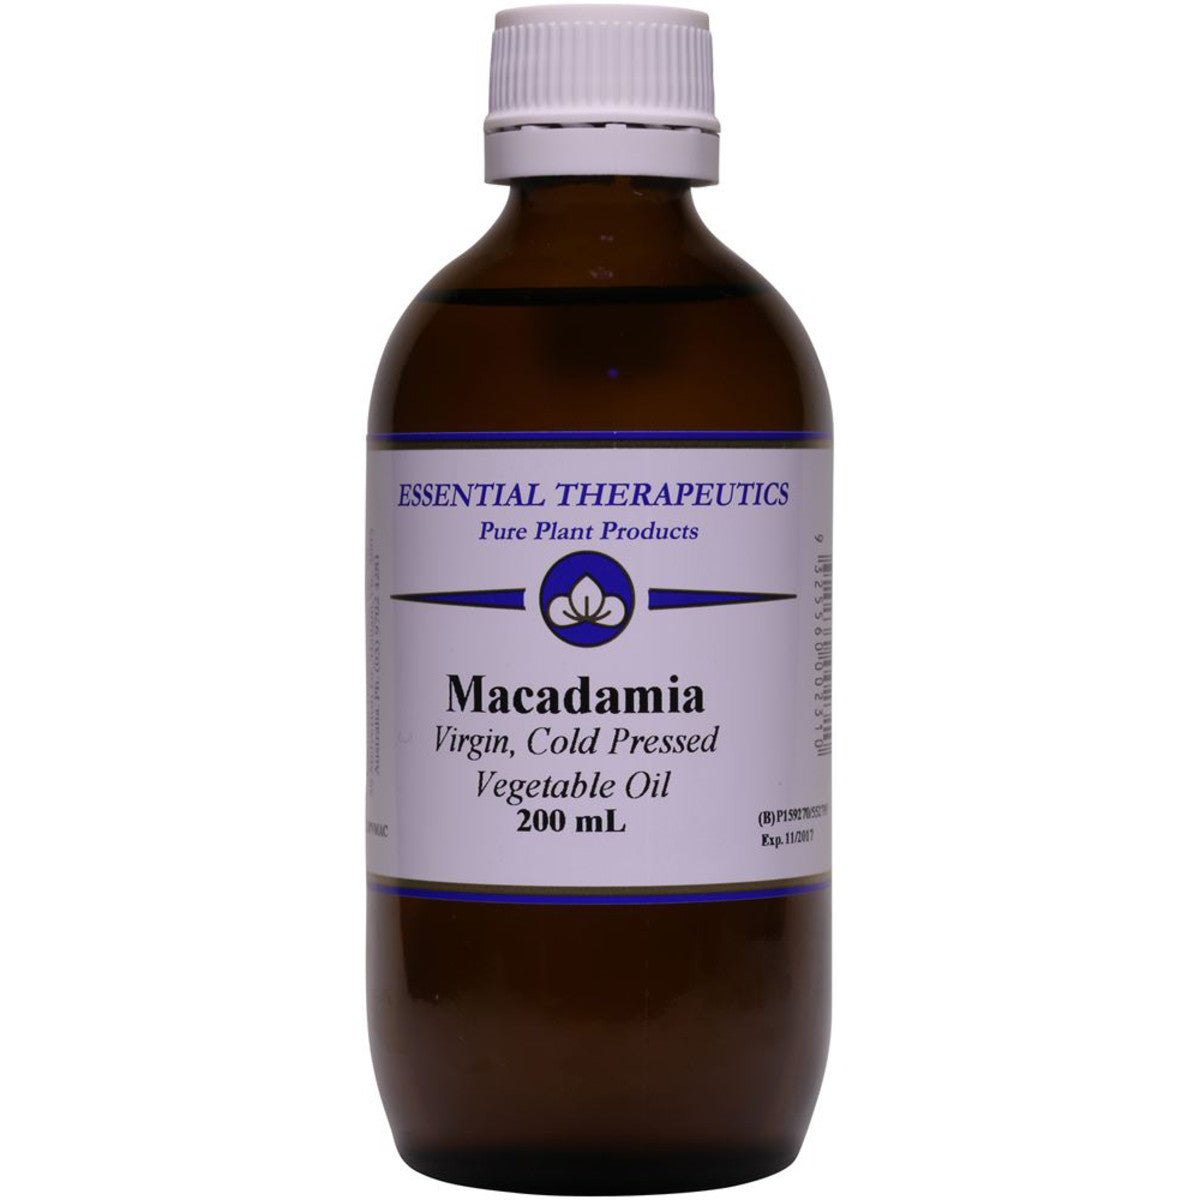 Essential Therapeutics - Vege Oil Macadamia Oil Virgin 200ml